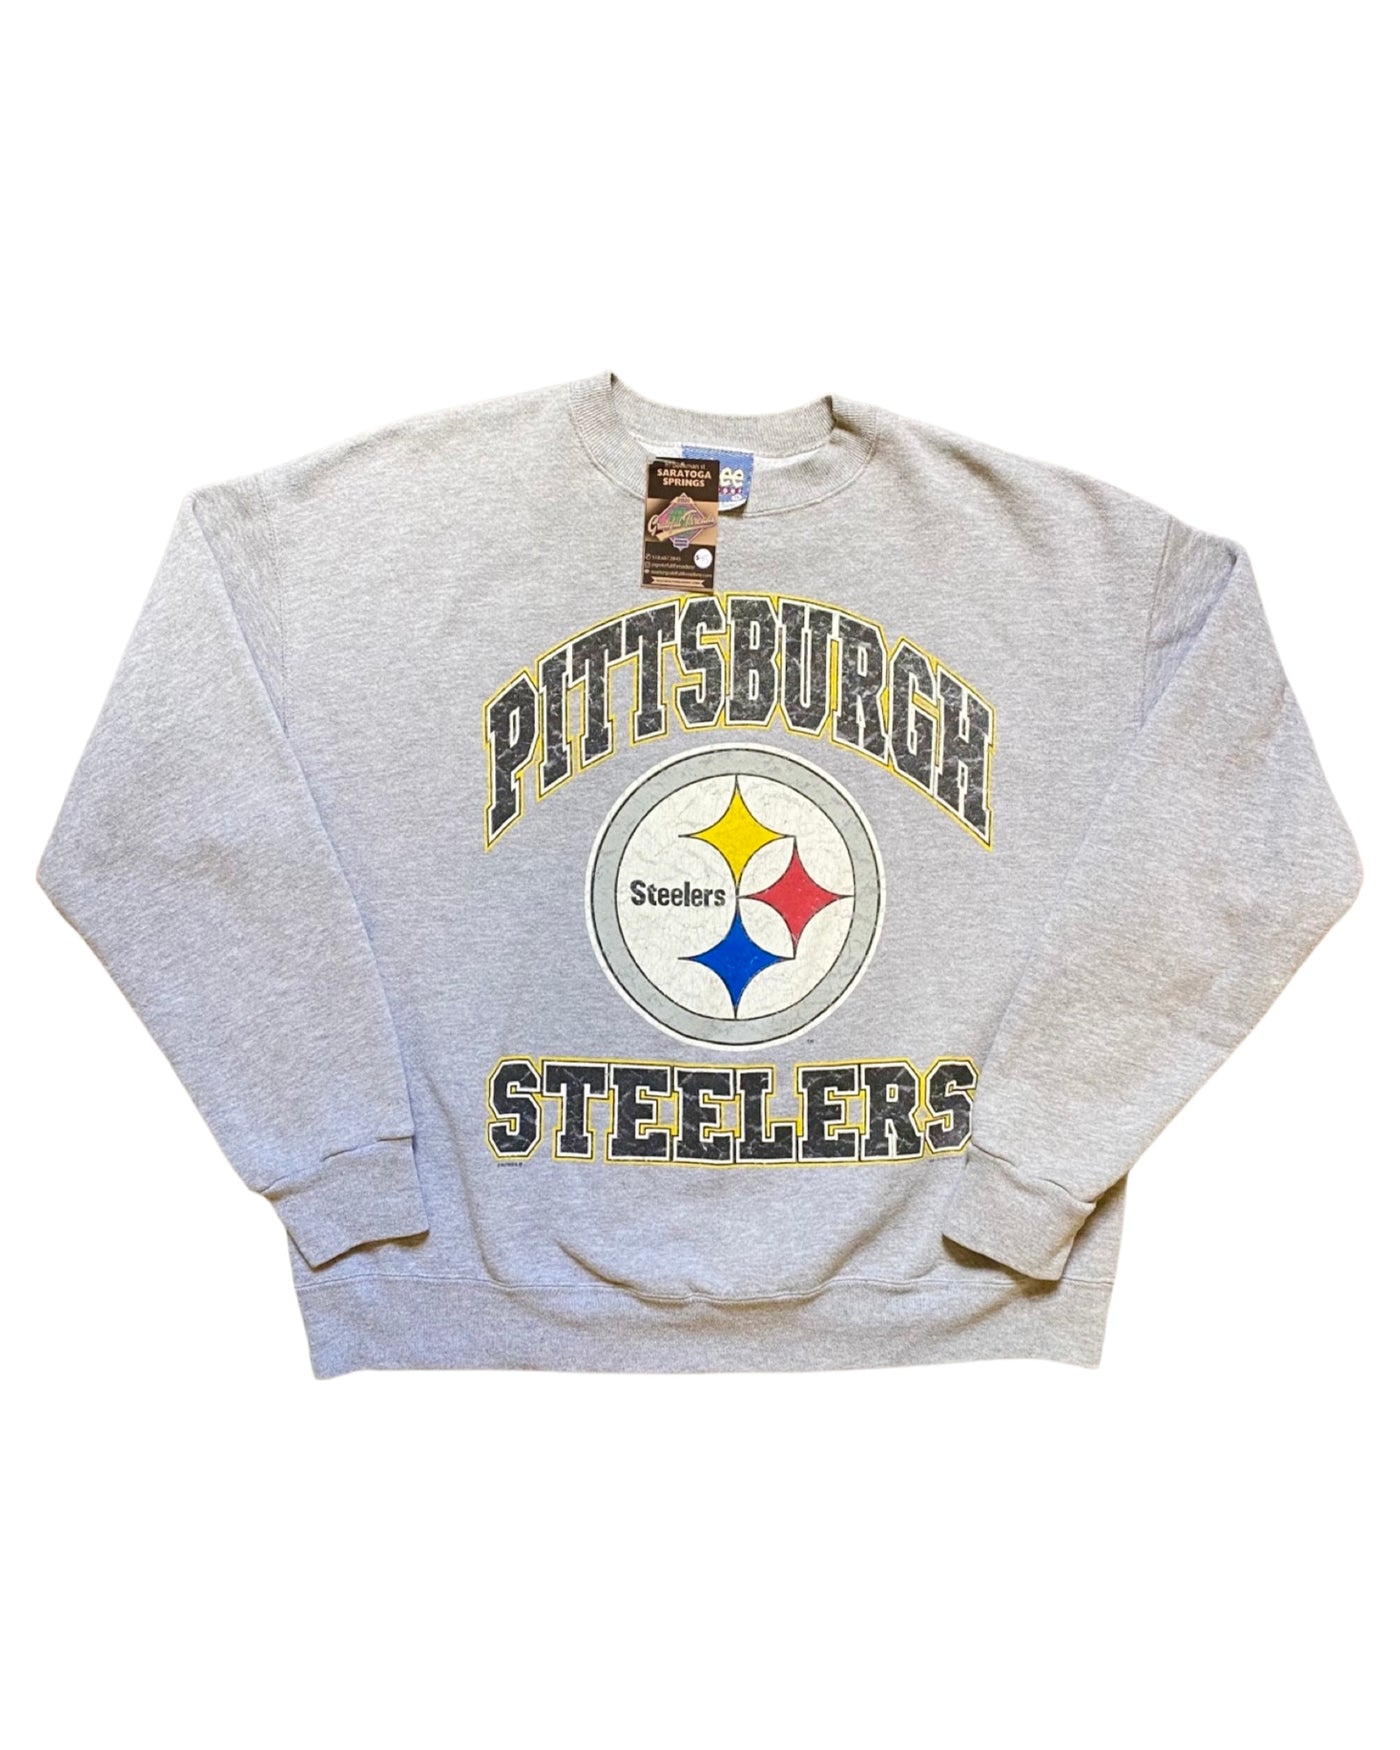 Vintage 1993 Pittsburgh Steelers Crewneck